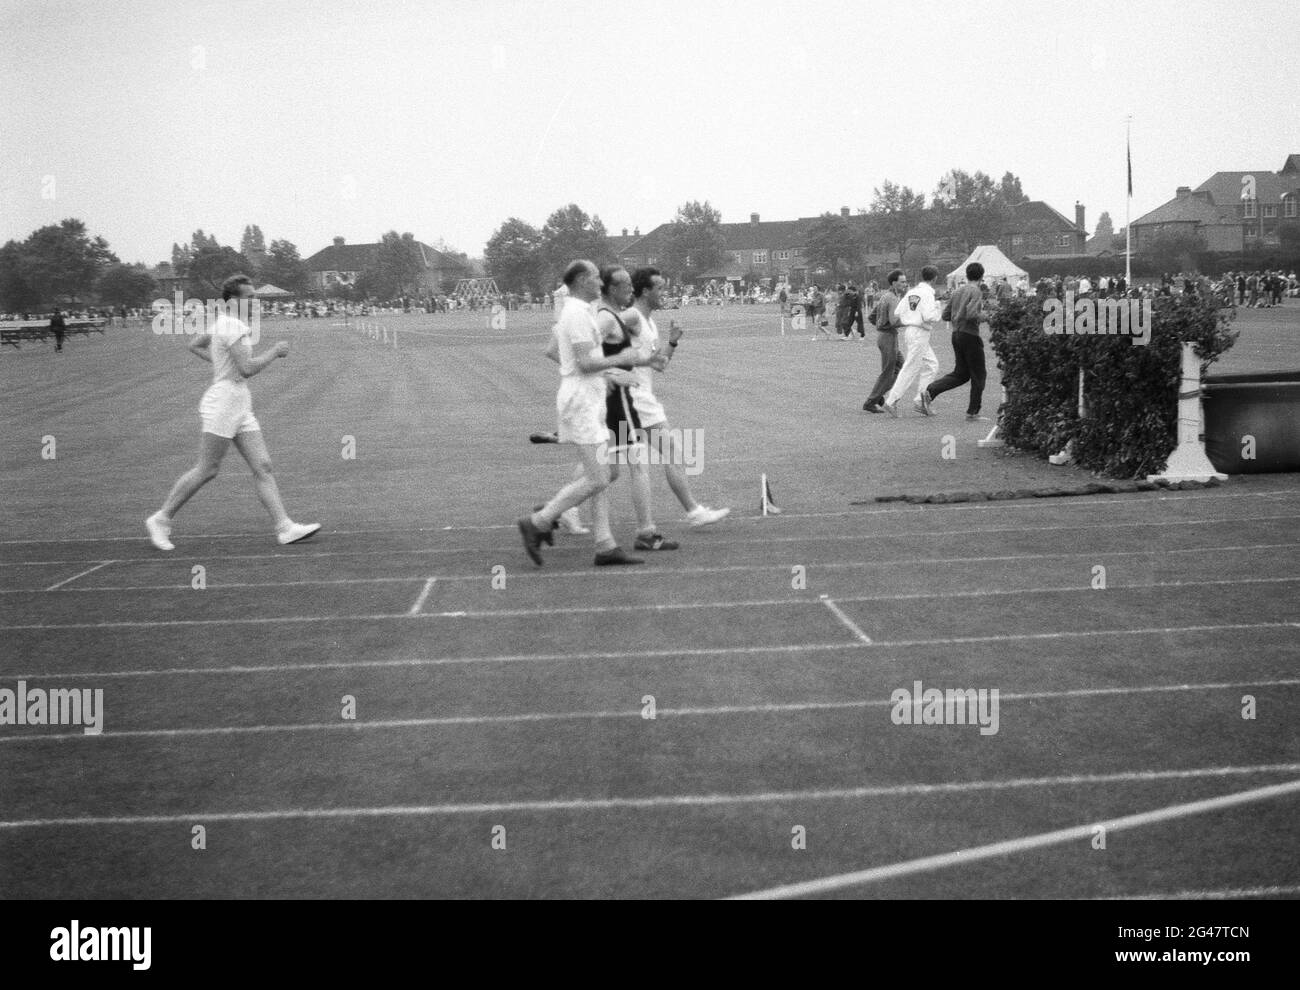 1954, historique, à l'extérieur sur une piste de gazon, les hommes marcheurs de course en compétition dans une journée de sports de la fonction publique, Angleterre, Royaume-Uni. La course à pied ou à pied est une discipline de longue distance en athlétisme, où un pied doit - ou semble - être en contact avec le sol à tout moment. Banque D'Images